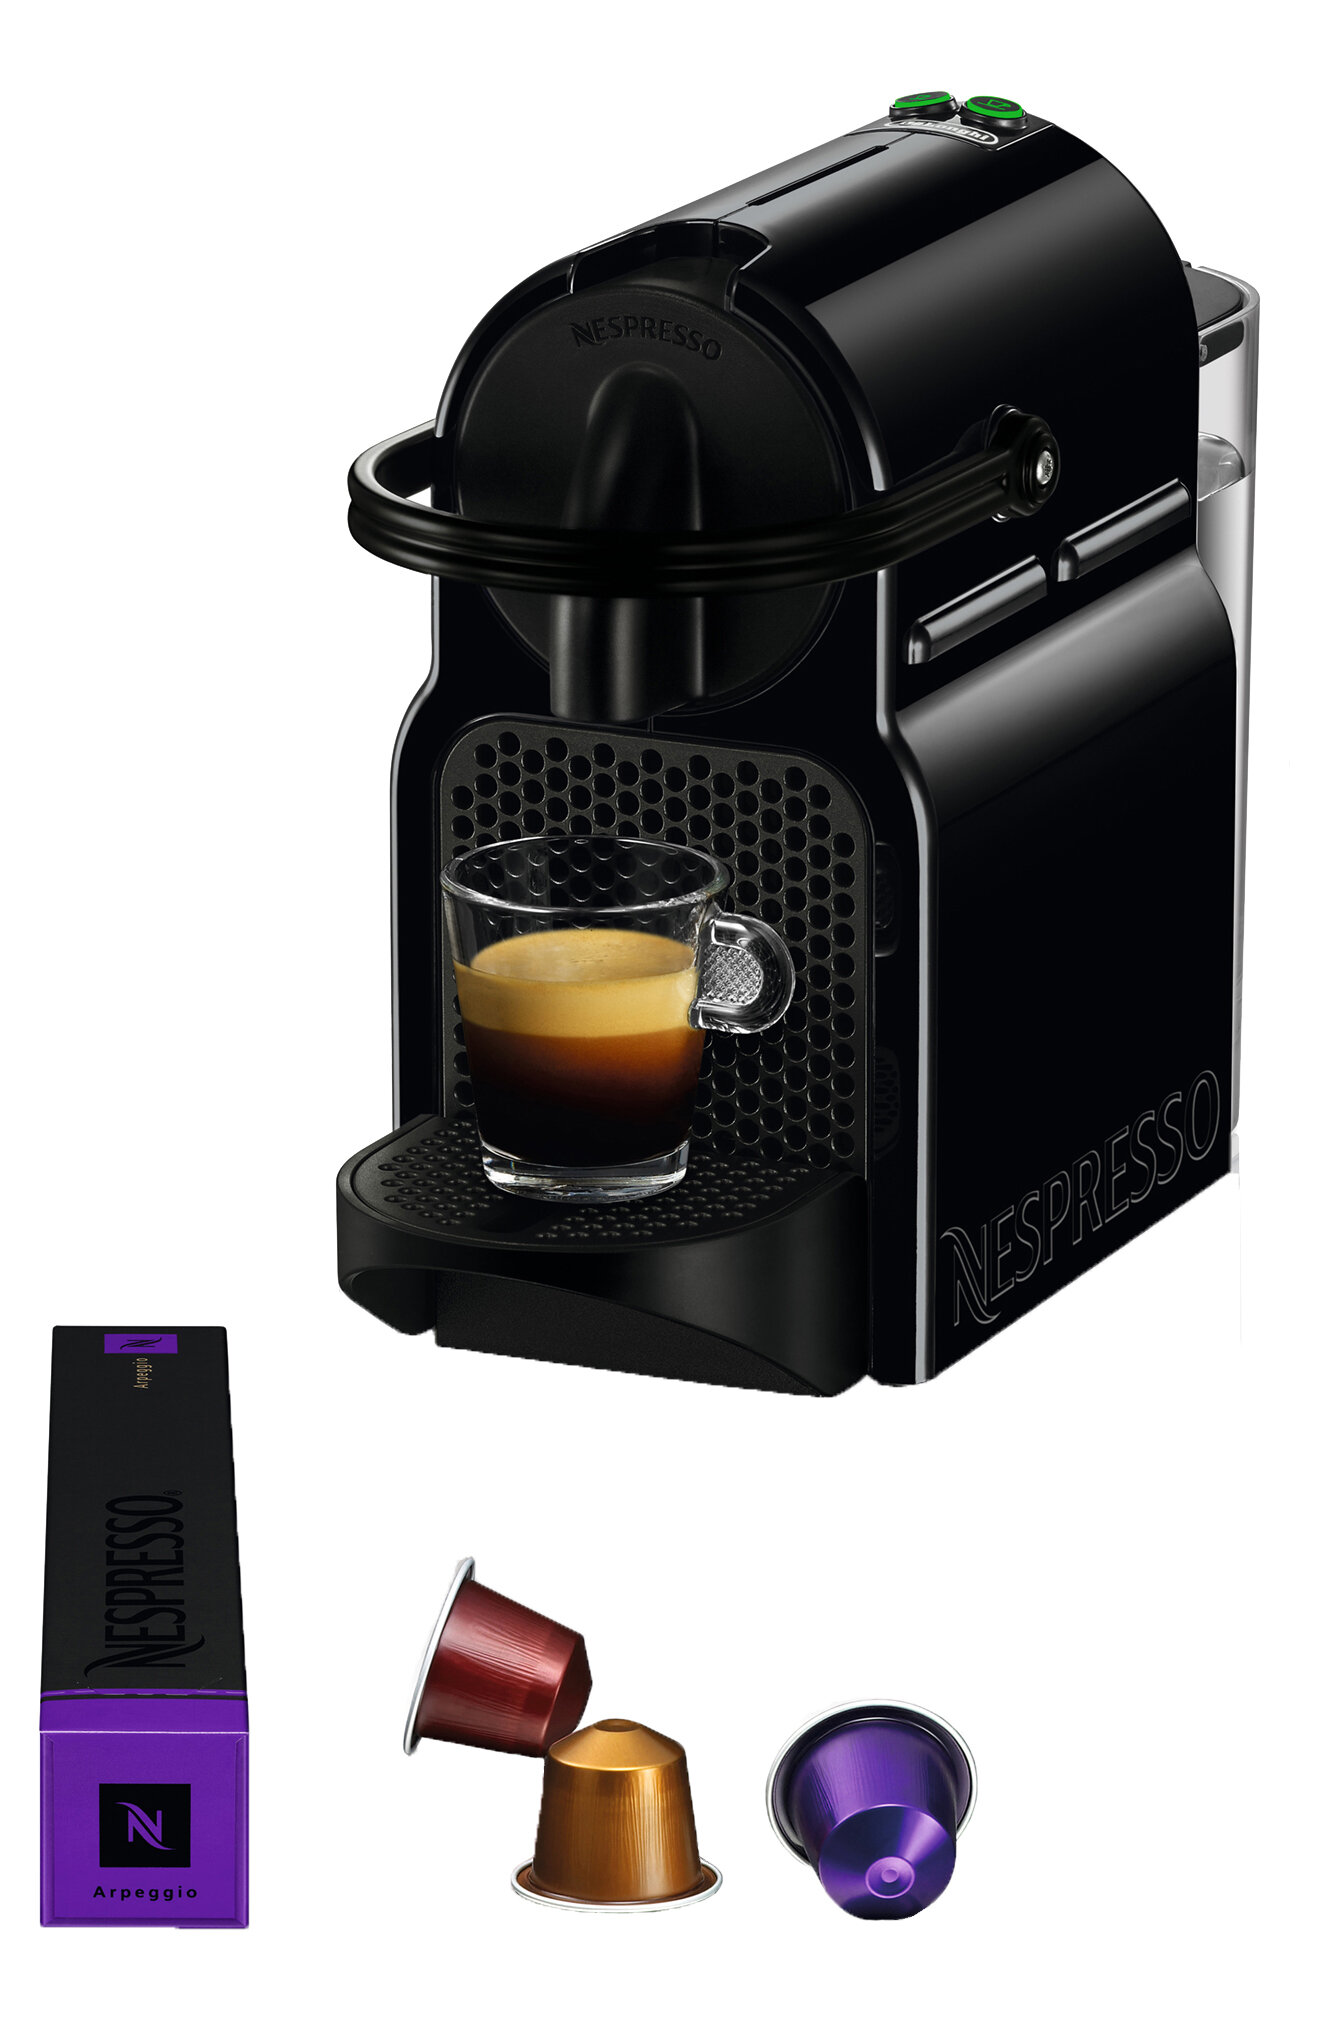 https://assets.wfcdn.com/im/80593921/compr-r85/5370/53702286/nespresso-inissia-original-coffee-and-espresso-machine-by-delonghi-black.jpg